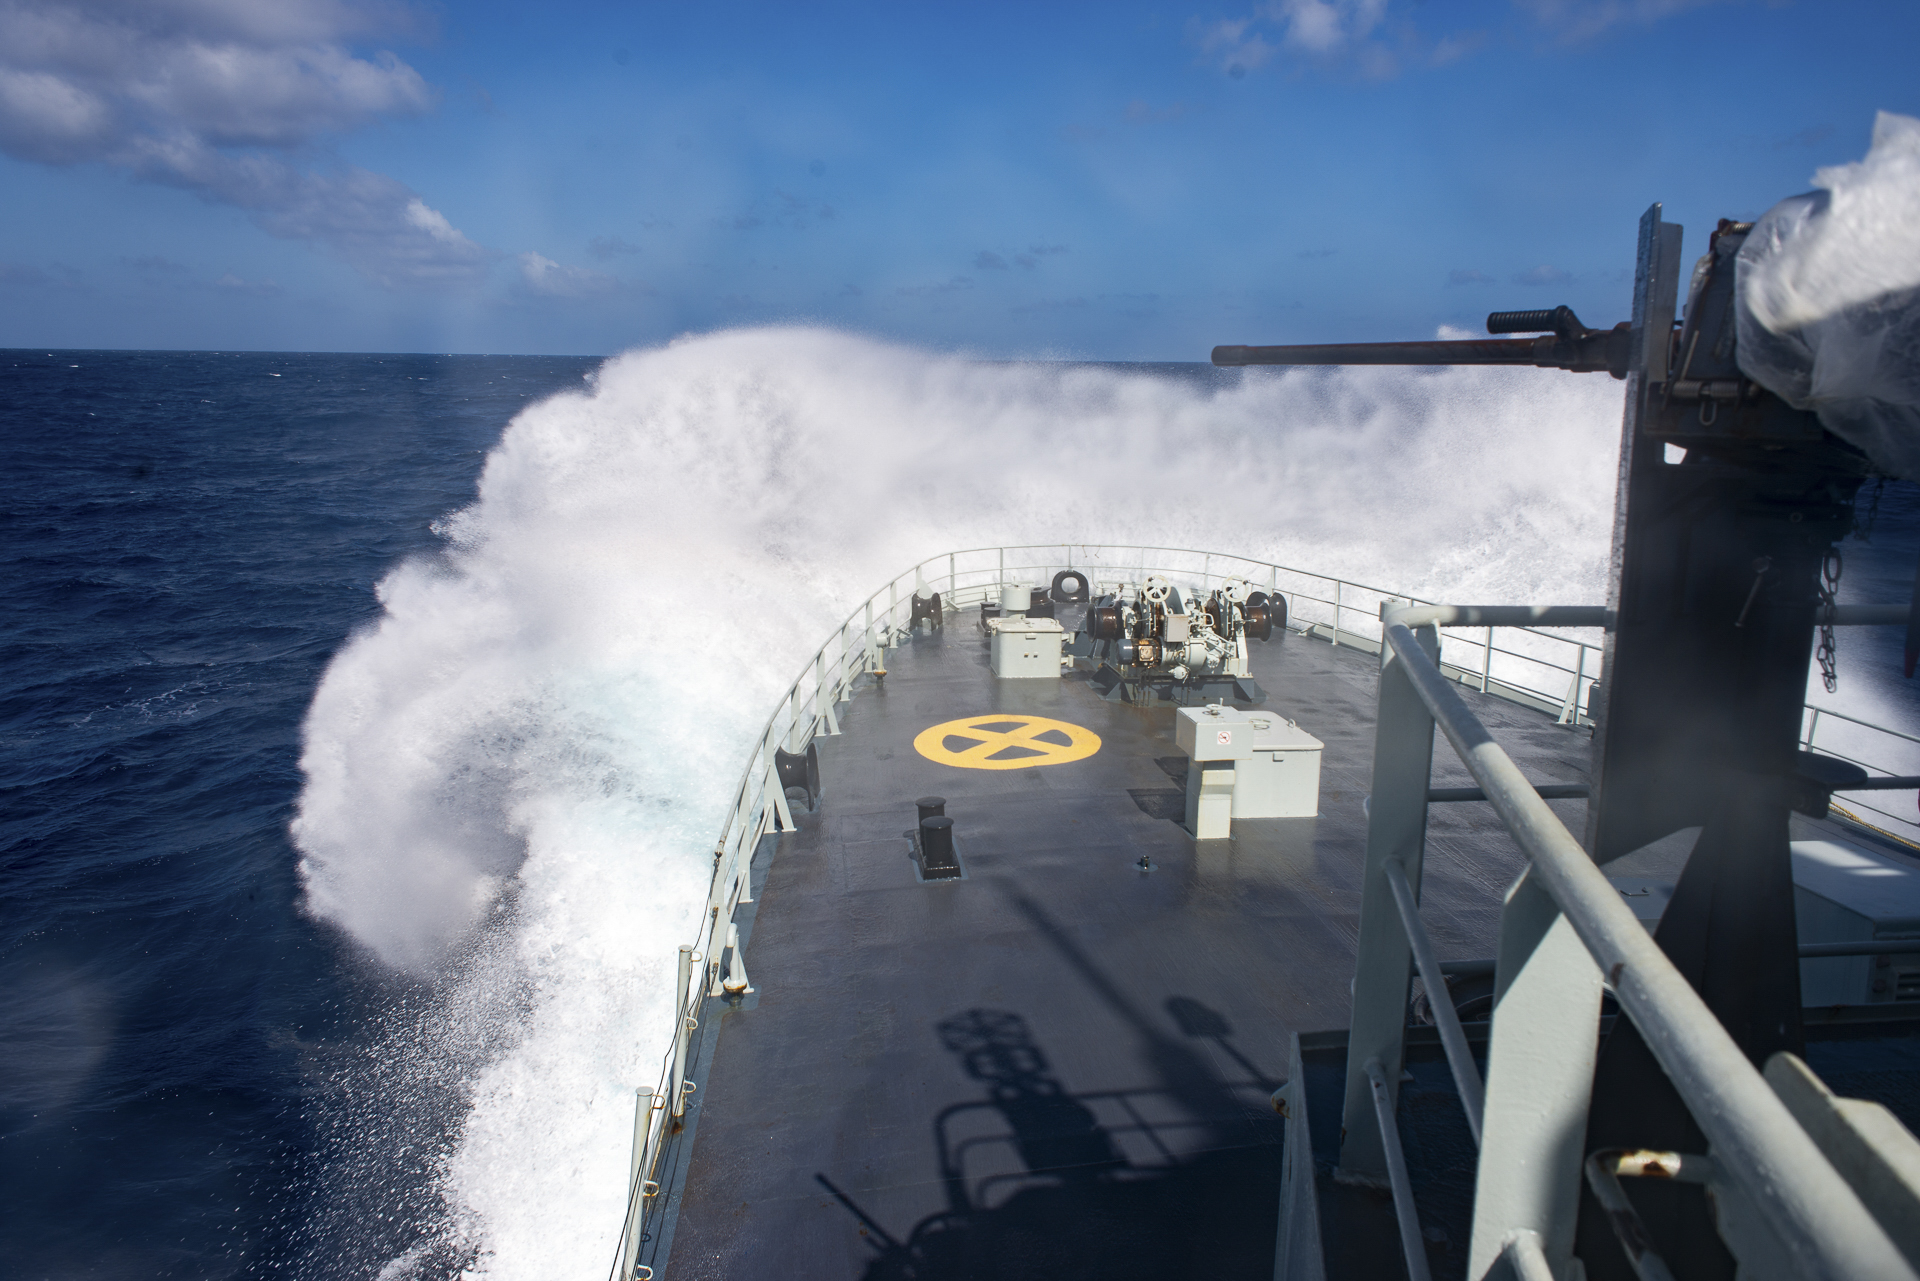 Des vagues s'écrasent contre le NCSM Nanaimo dans les eaux de l’est du Pacifique lors de l'opération CARIBBE le 3 mars 2020. Photo : Forces armées canadiennes.